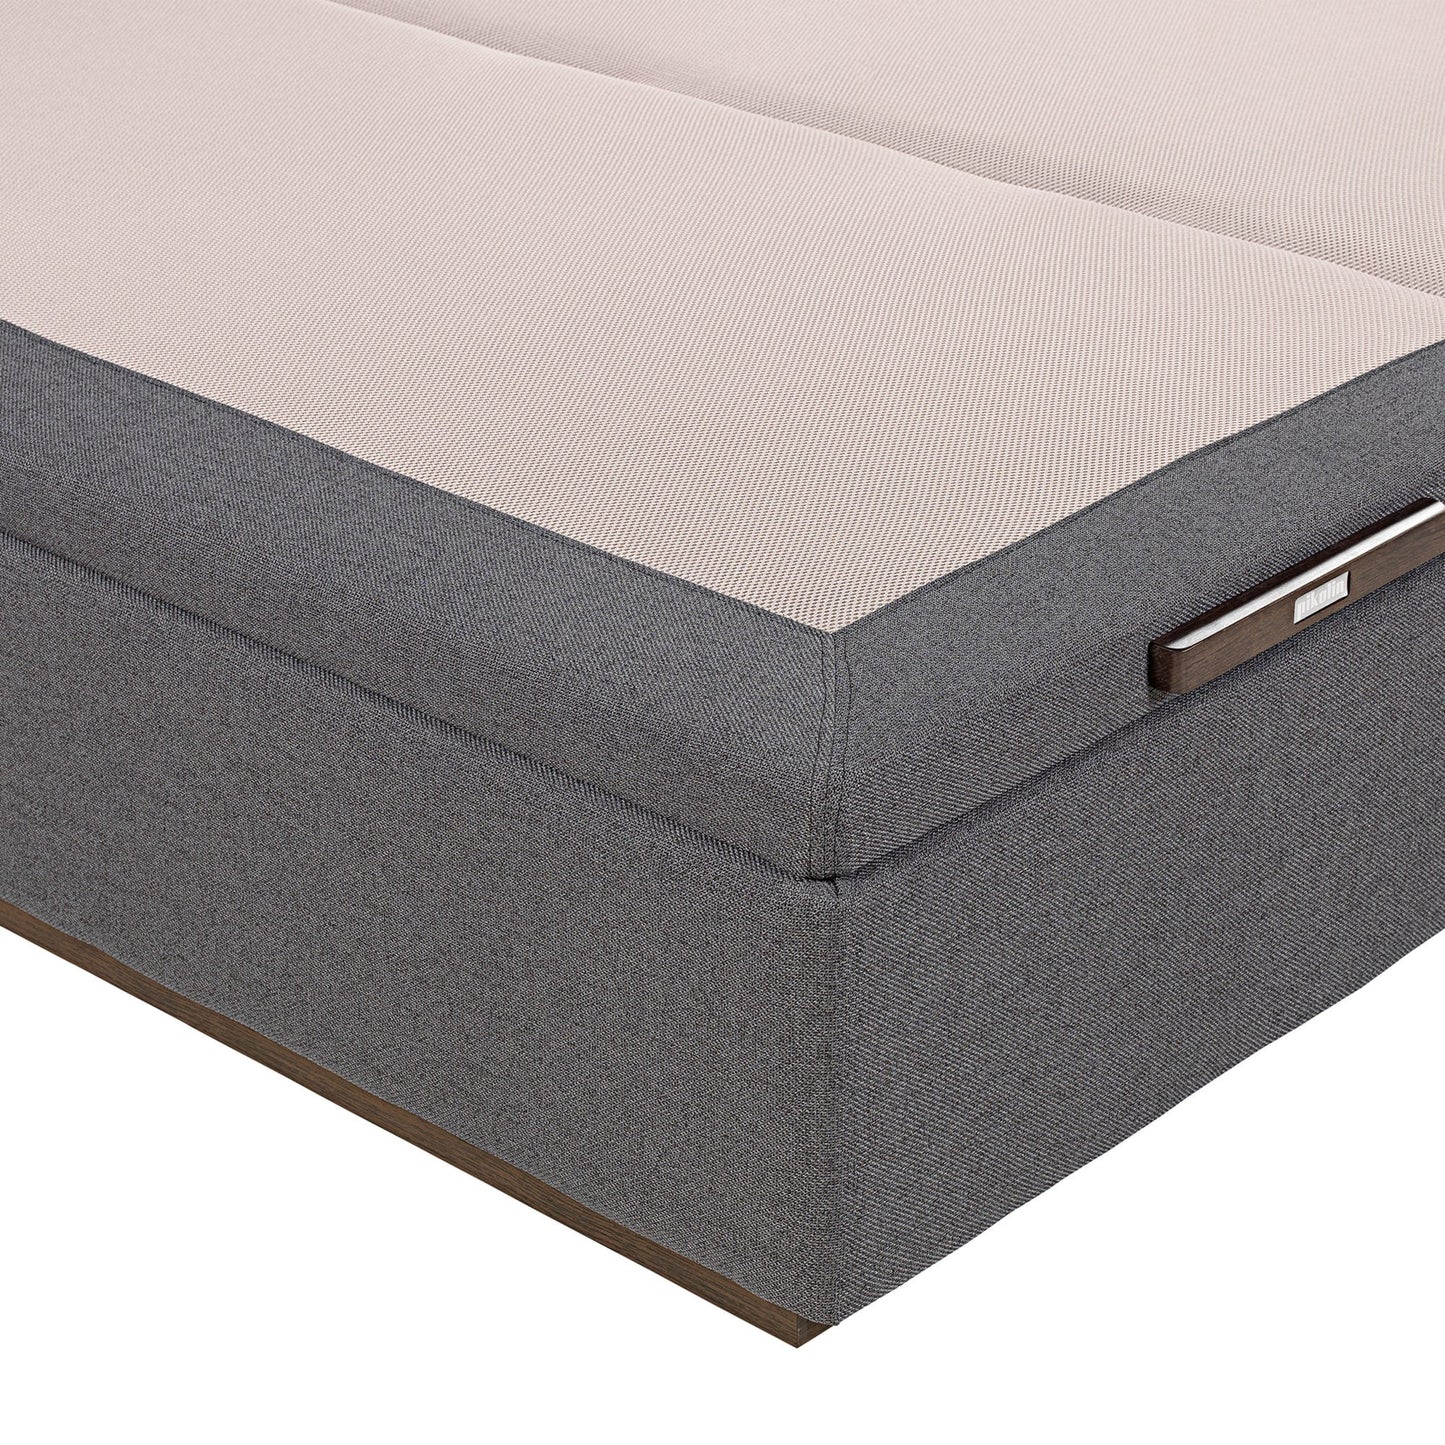 Canapé abatible de tapa doble de color piombo - TEXTIL - 180x200